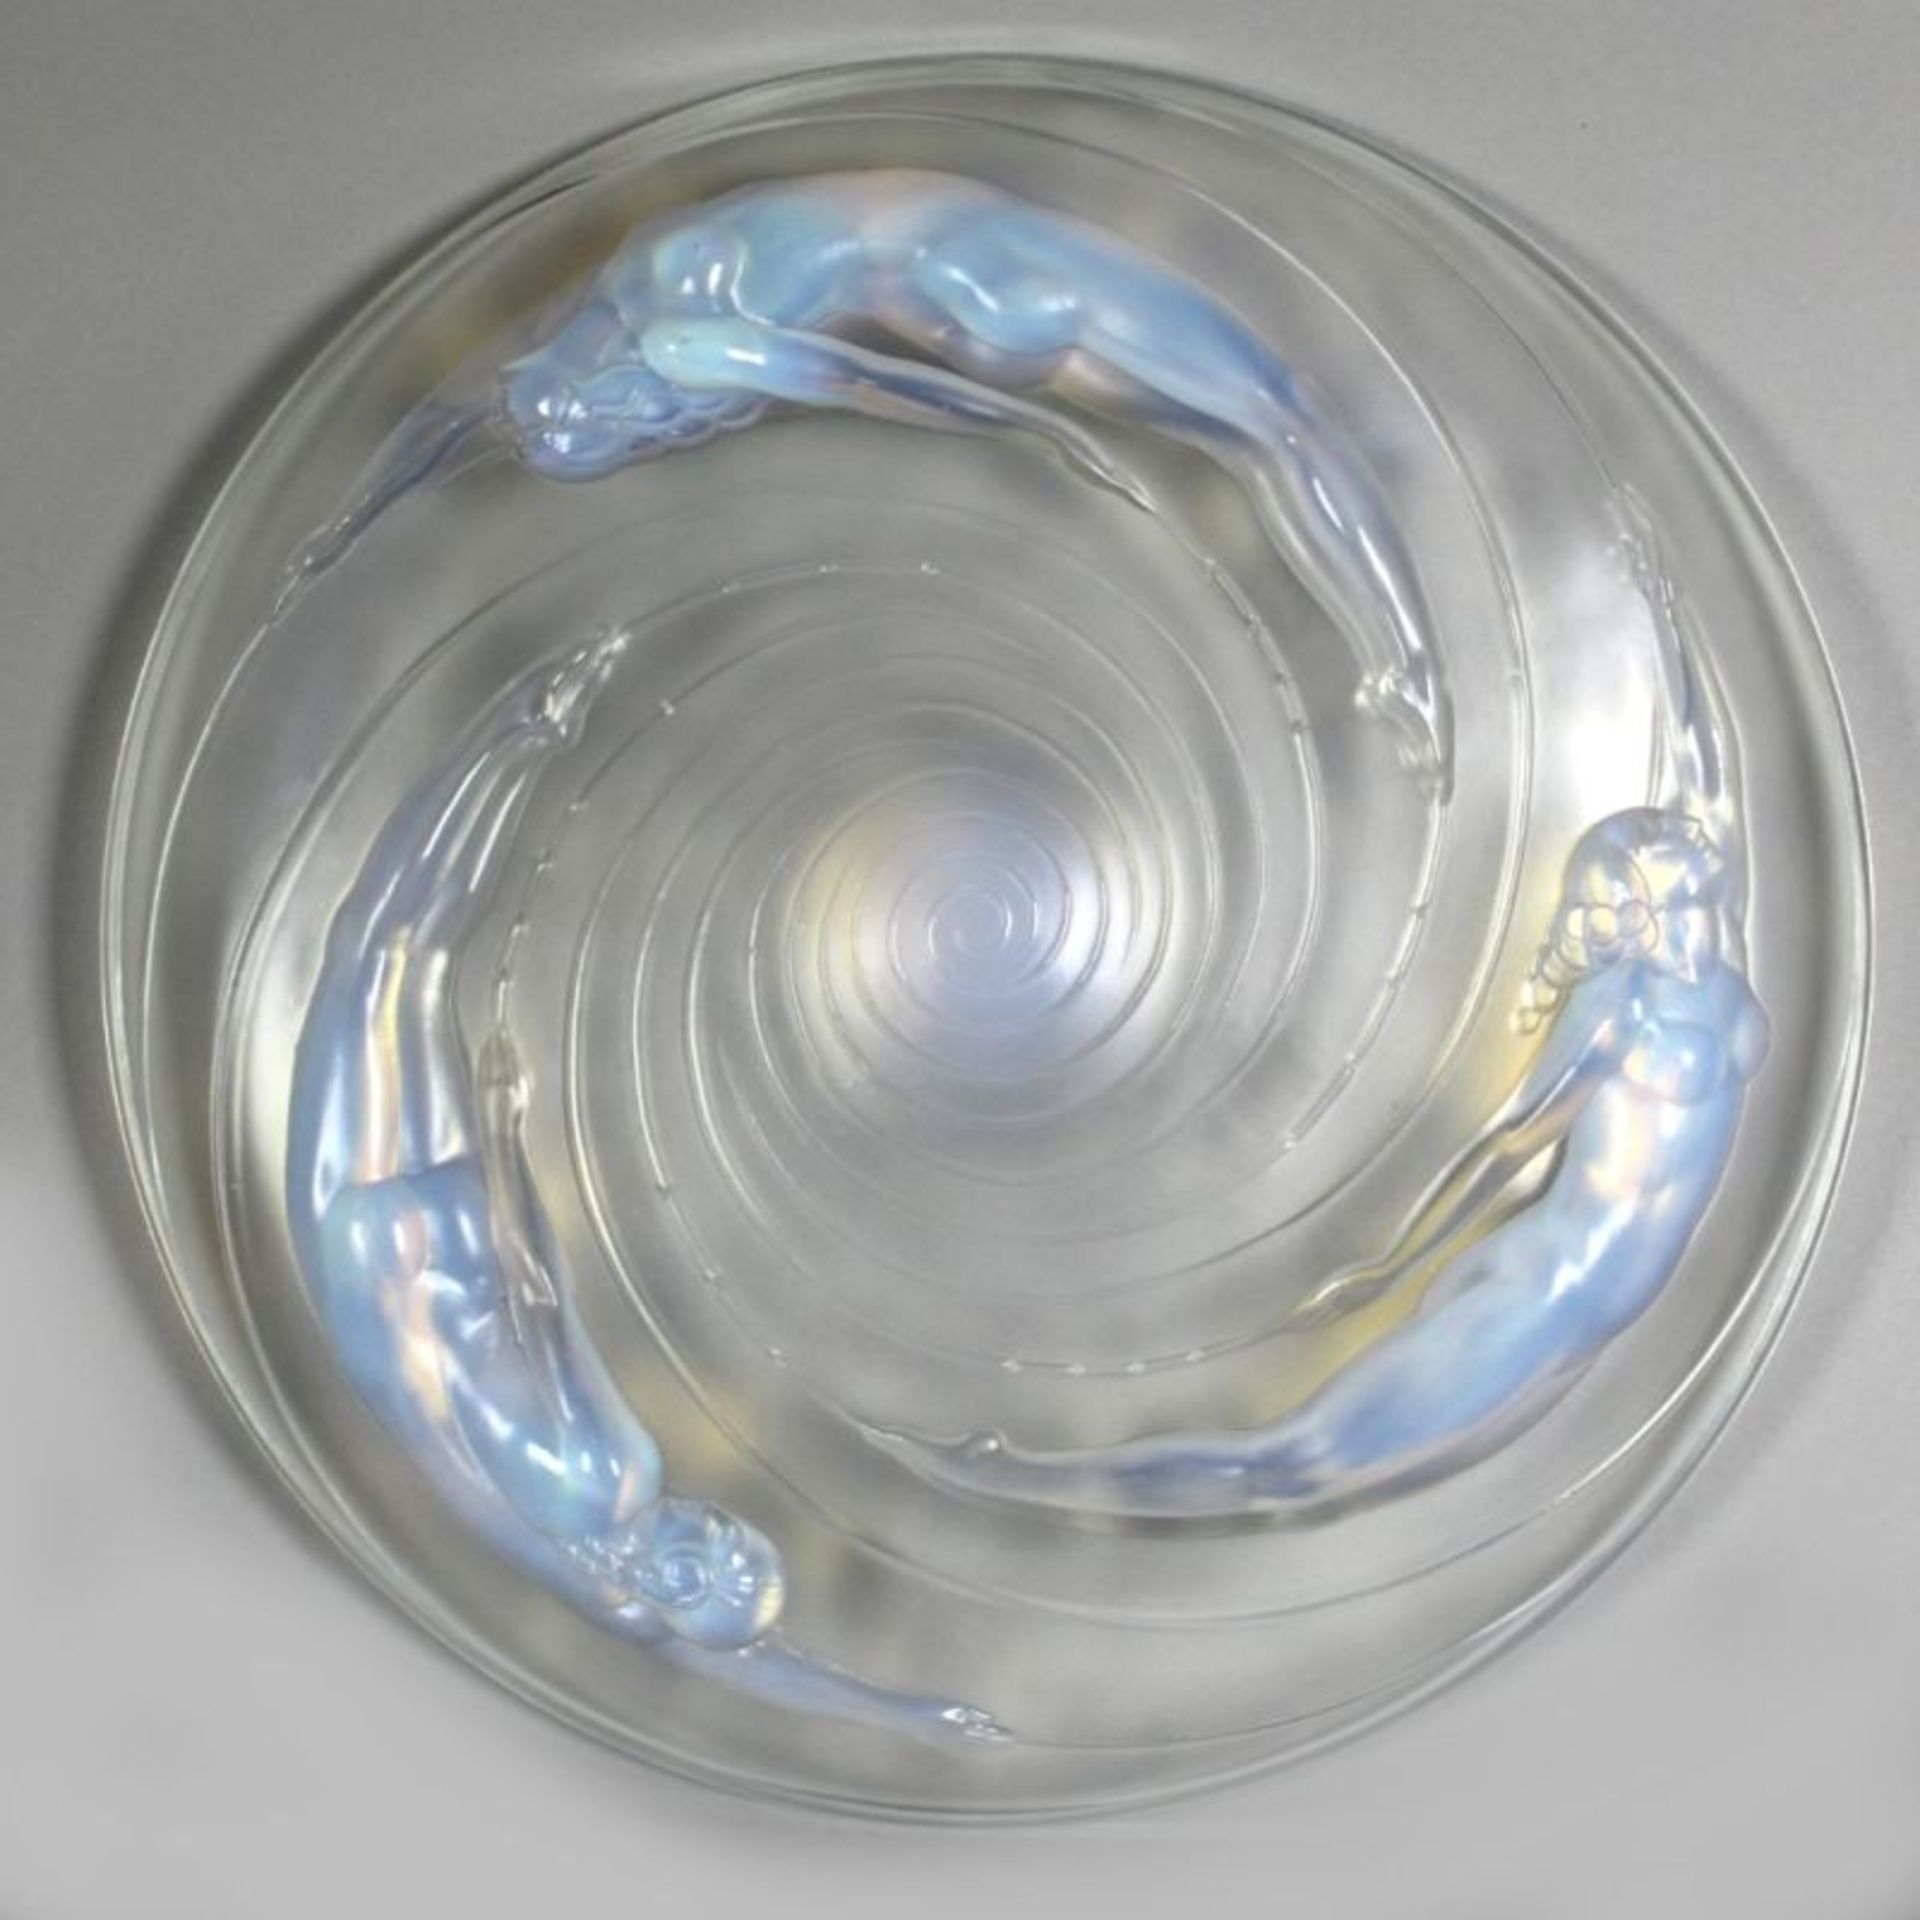 Glas-Zierschale, "Spirales et Sujets", Maurius Ernest Sabino, Paris, um 1930, Mod.nr.:9081, runde, - Bild 2 aus 3